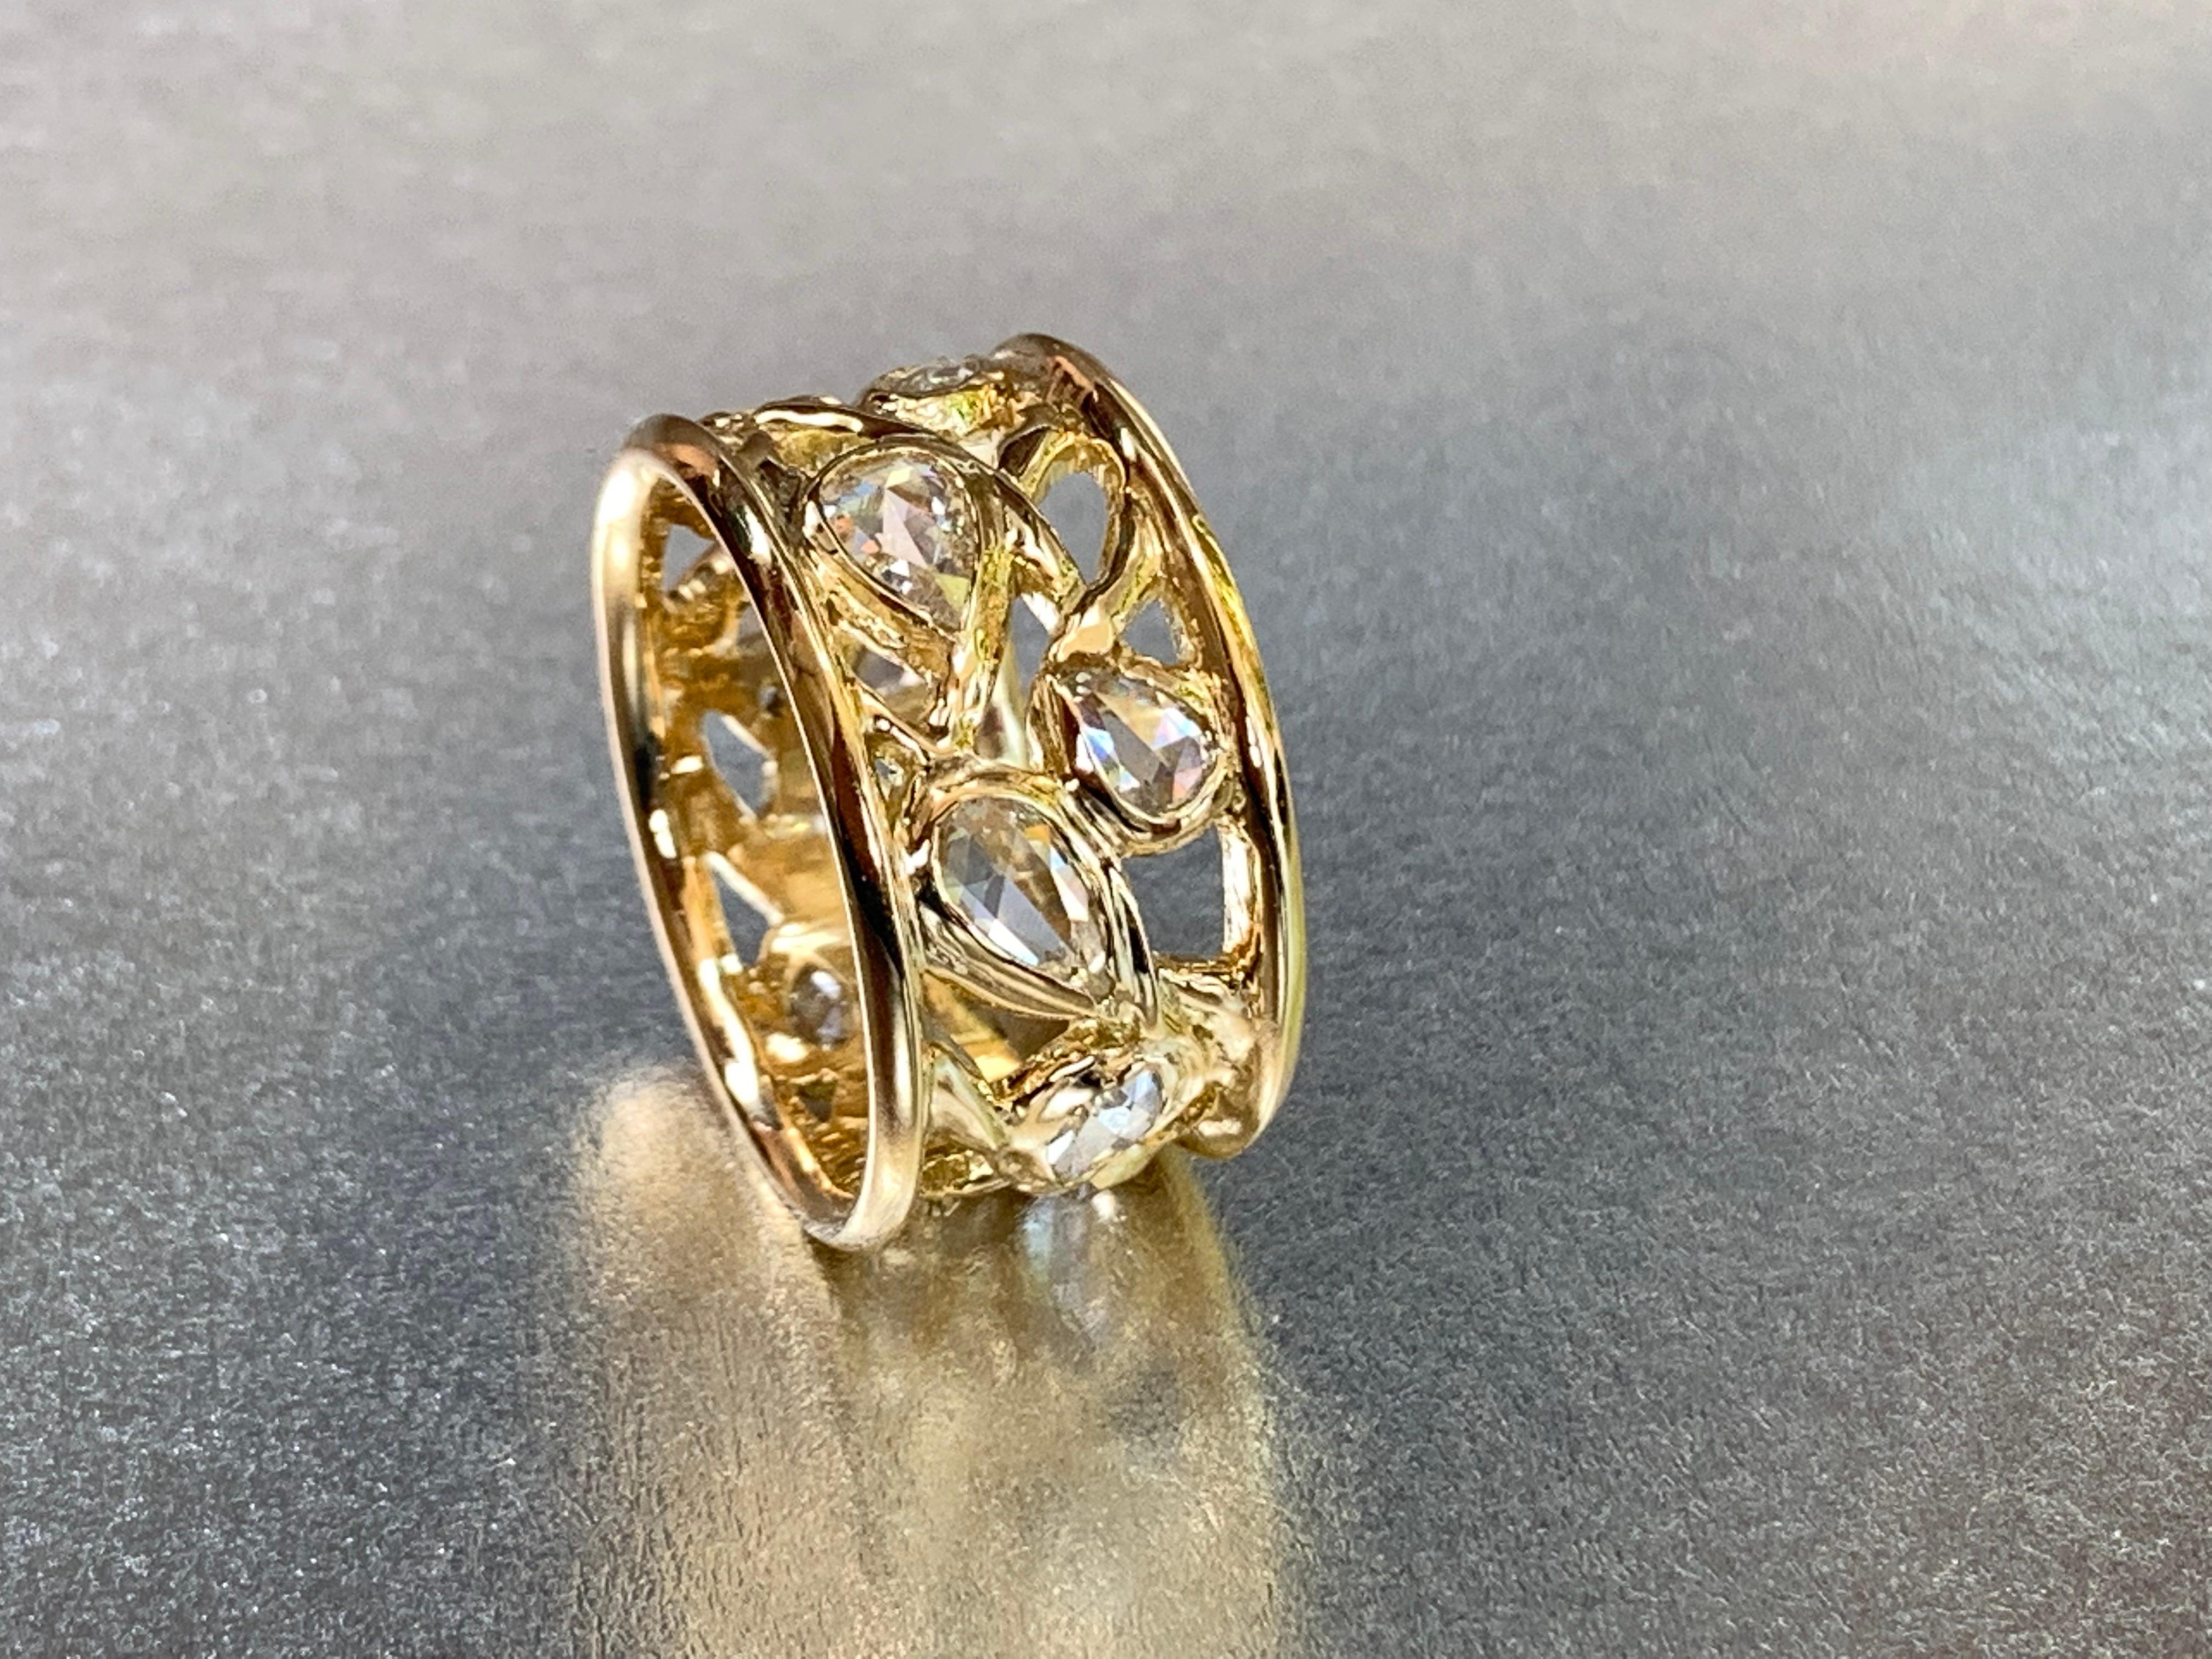 Dieser organisch geformte Ring aus 18-karätigem Gelbgold gehört zu einer Serie einzigartiger breiter Ringe und ist eine Komposition aus Wellen funkelnder weißer Diamanten im Rosenschliff in verschiedenen Größen. 
Diese Art von Ring kann auf